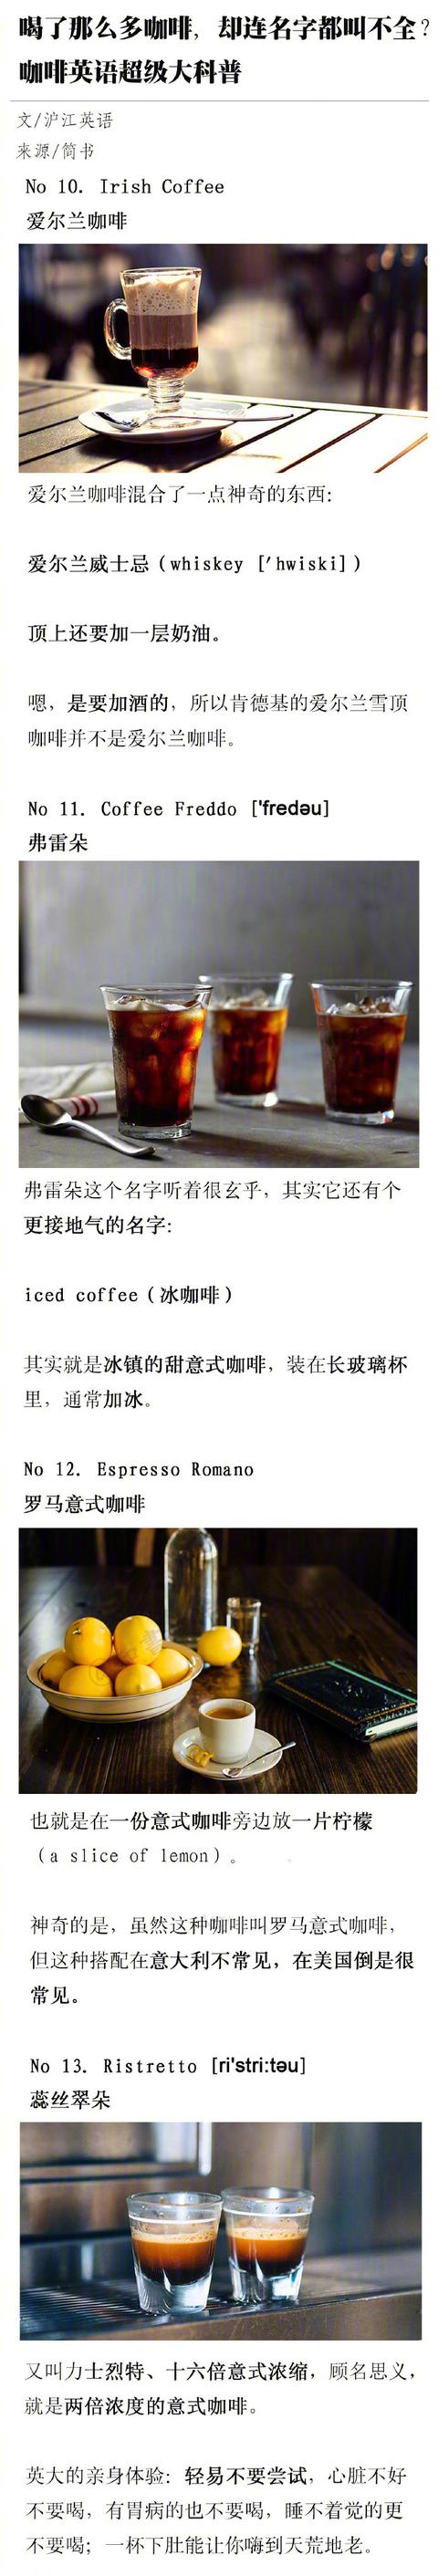 卡布奇诺、摩卡、美式这些不同种类的咖啡区别有哪些？看完就明白